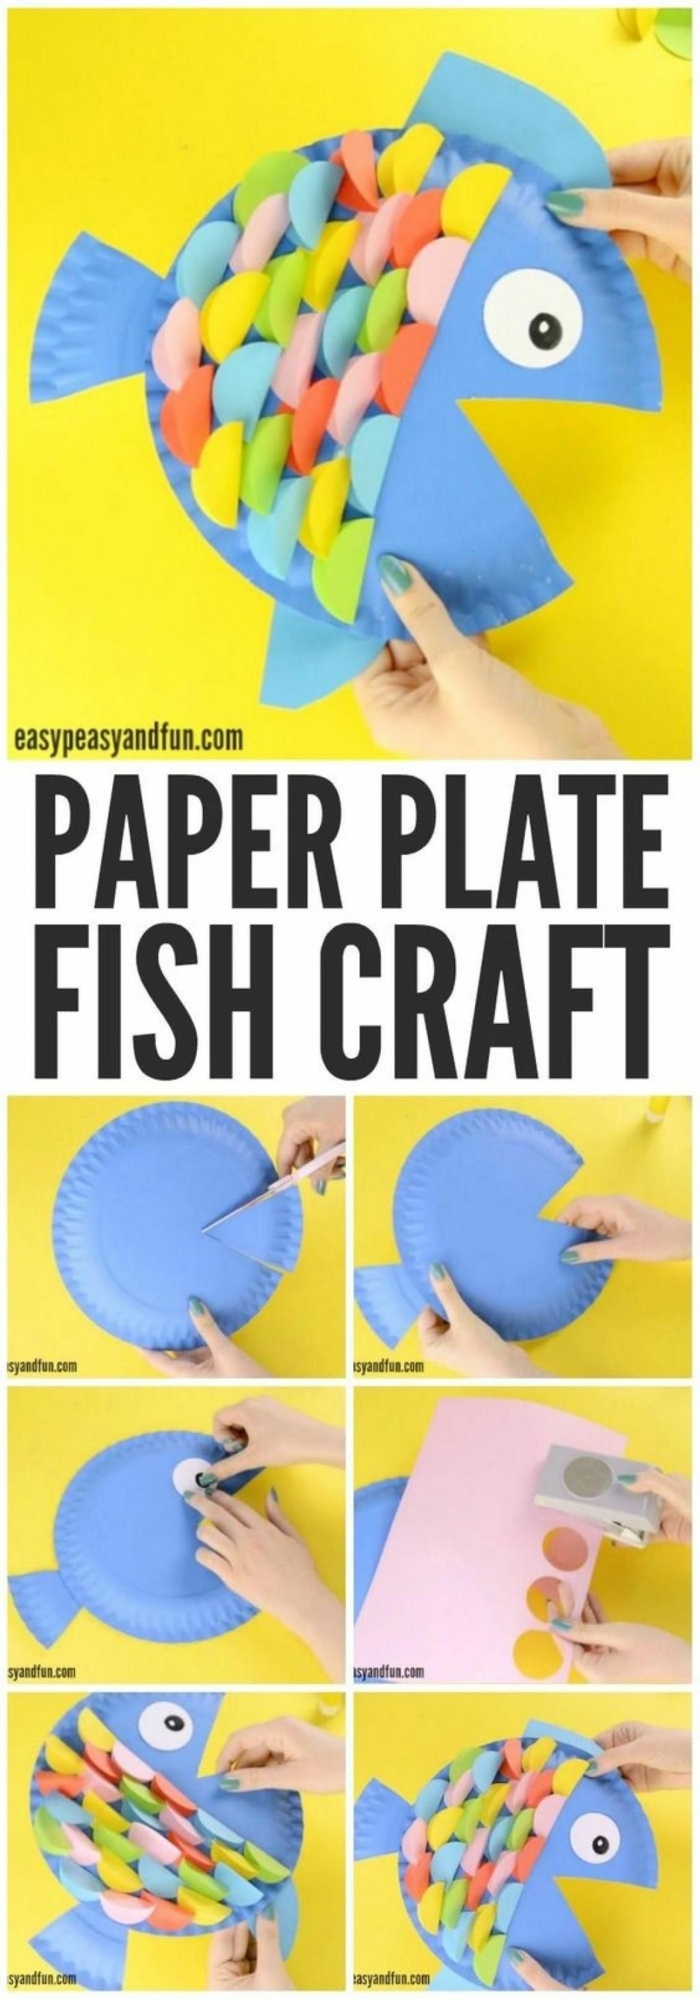 Fische basteln mit Kindern, DIY Anleitung, Hand bastelt blauen Fisch aus Pappteller